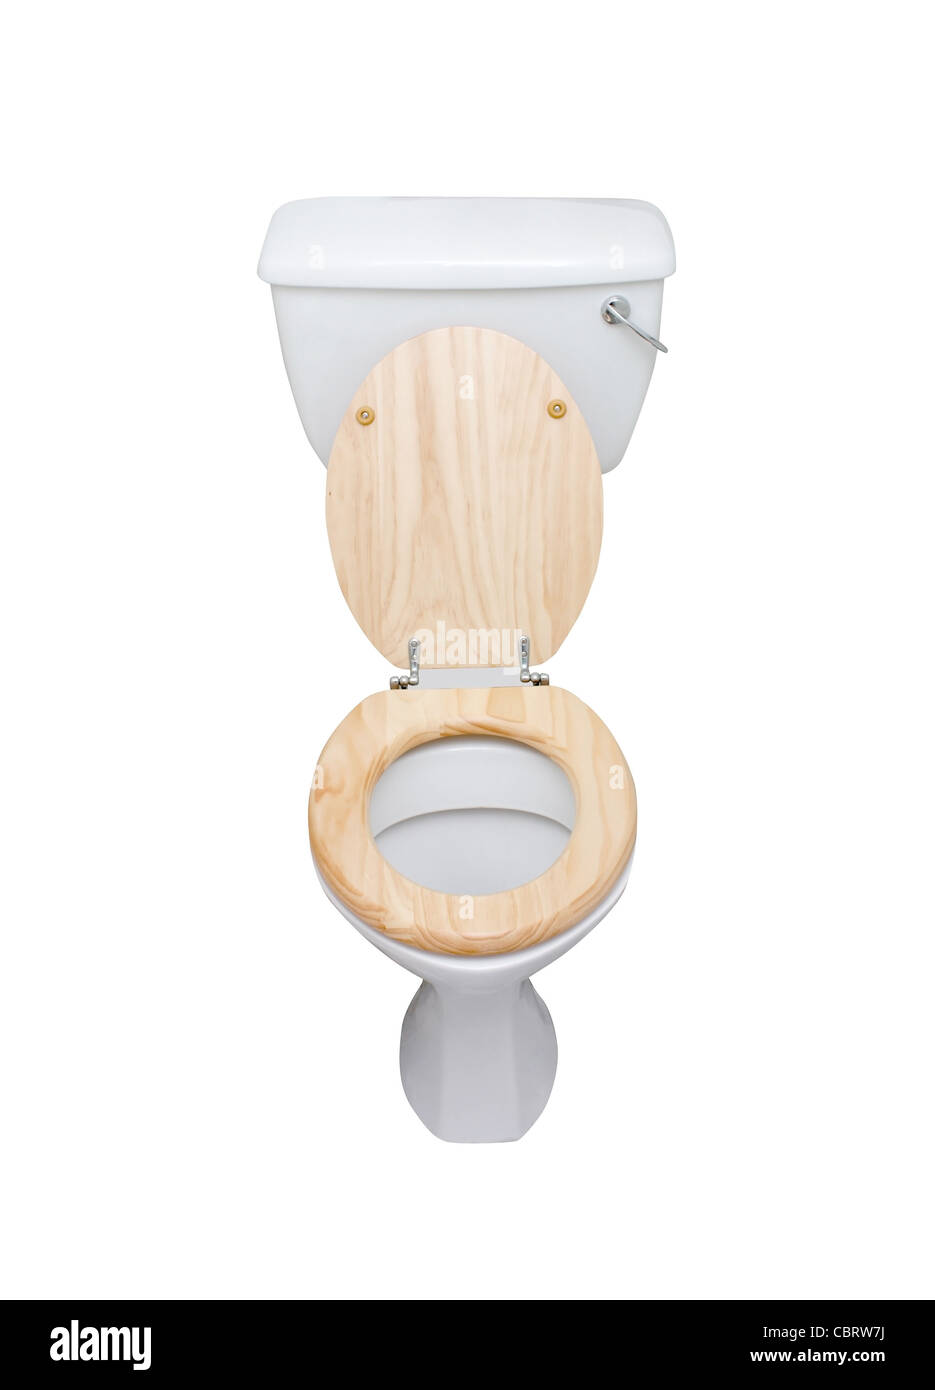 Toilet isolated on white Stock Photo